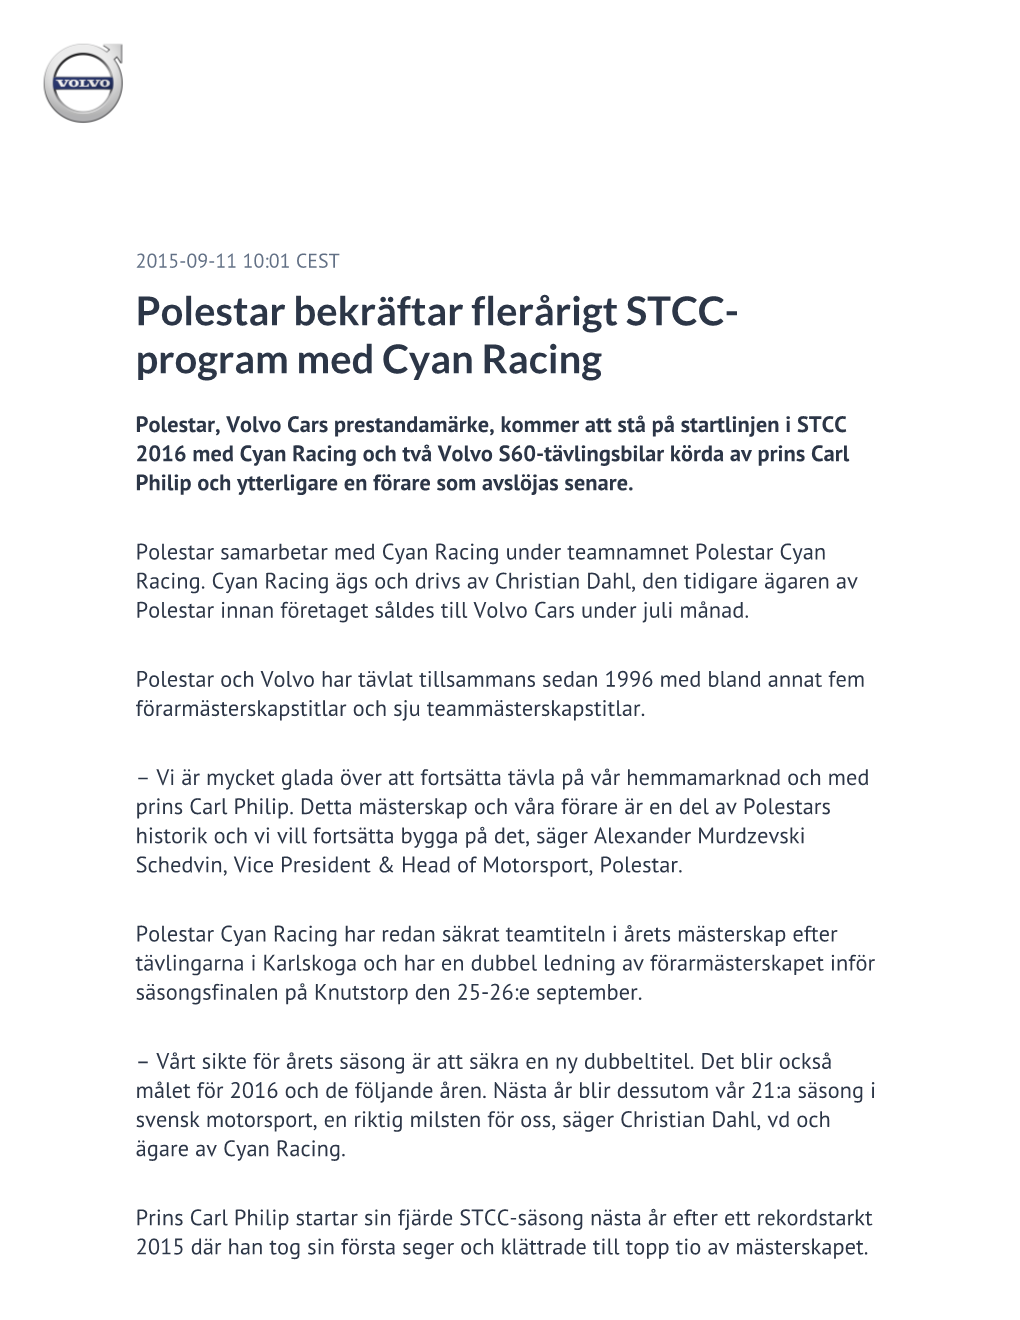 Polestar Bekräftar Flerårigt STCC-Program Med Cyan Racing